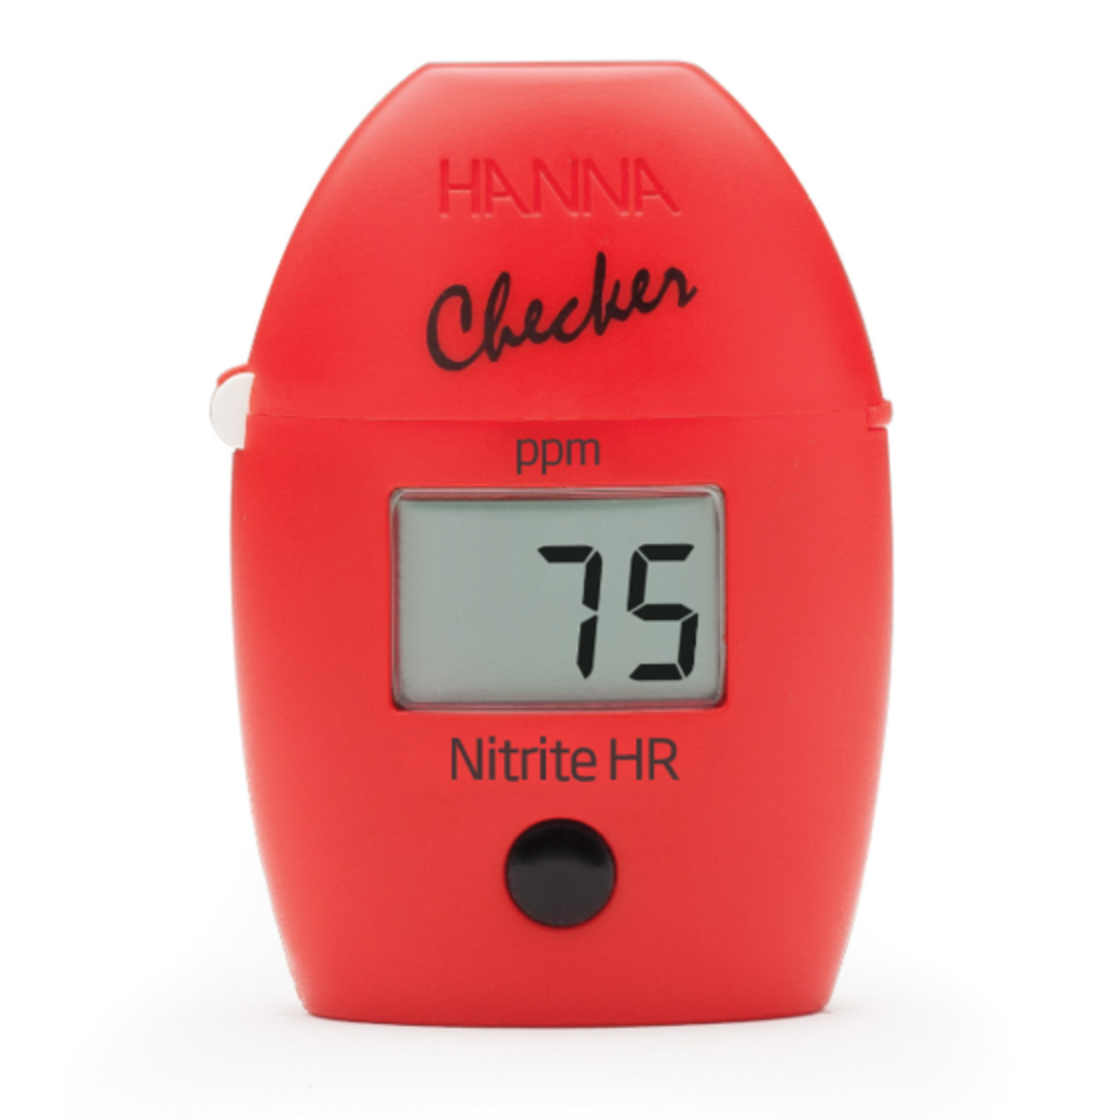 האנה צ'קר HI708 מכשיר בדיקת רמת NO2 ניטריט טווח גבוה - Hanna Checker NO2 Nitrite HI708 Digital Water Tester